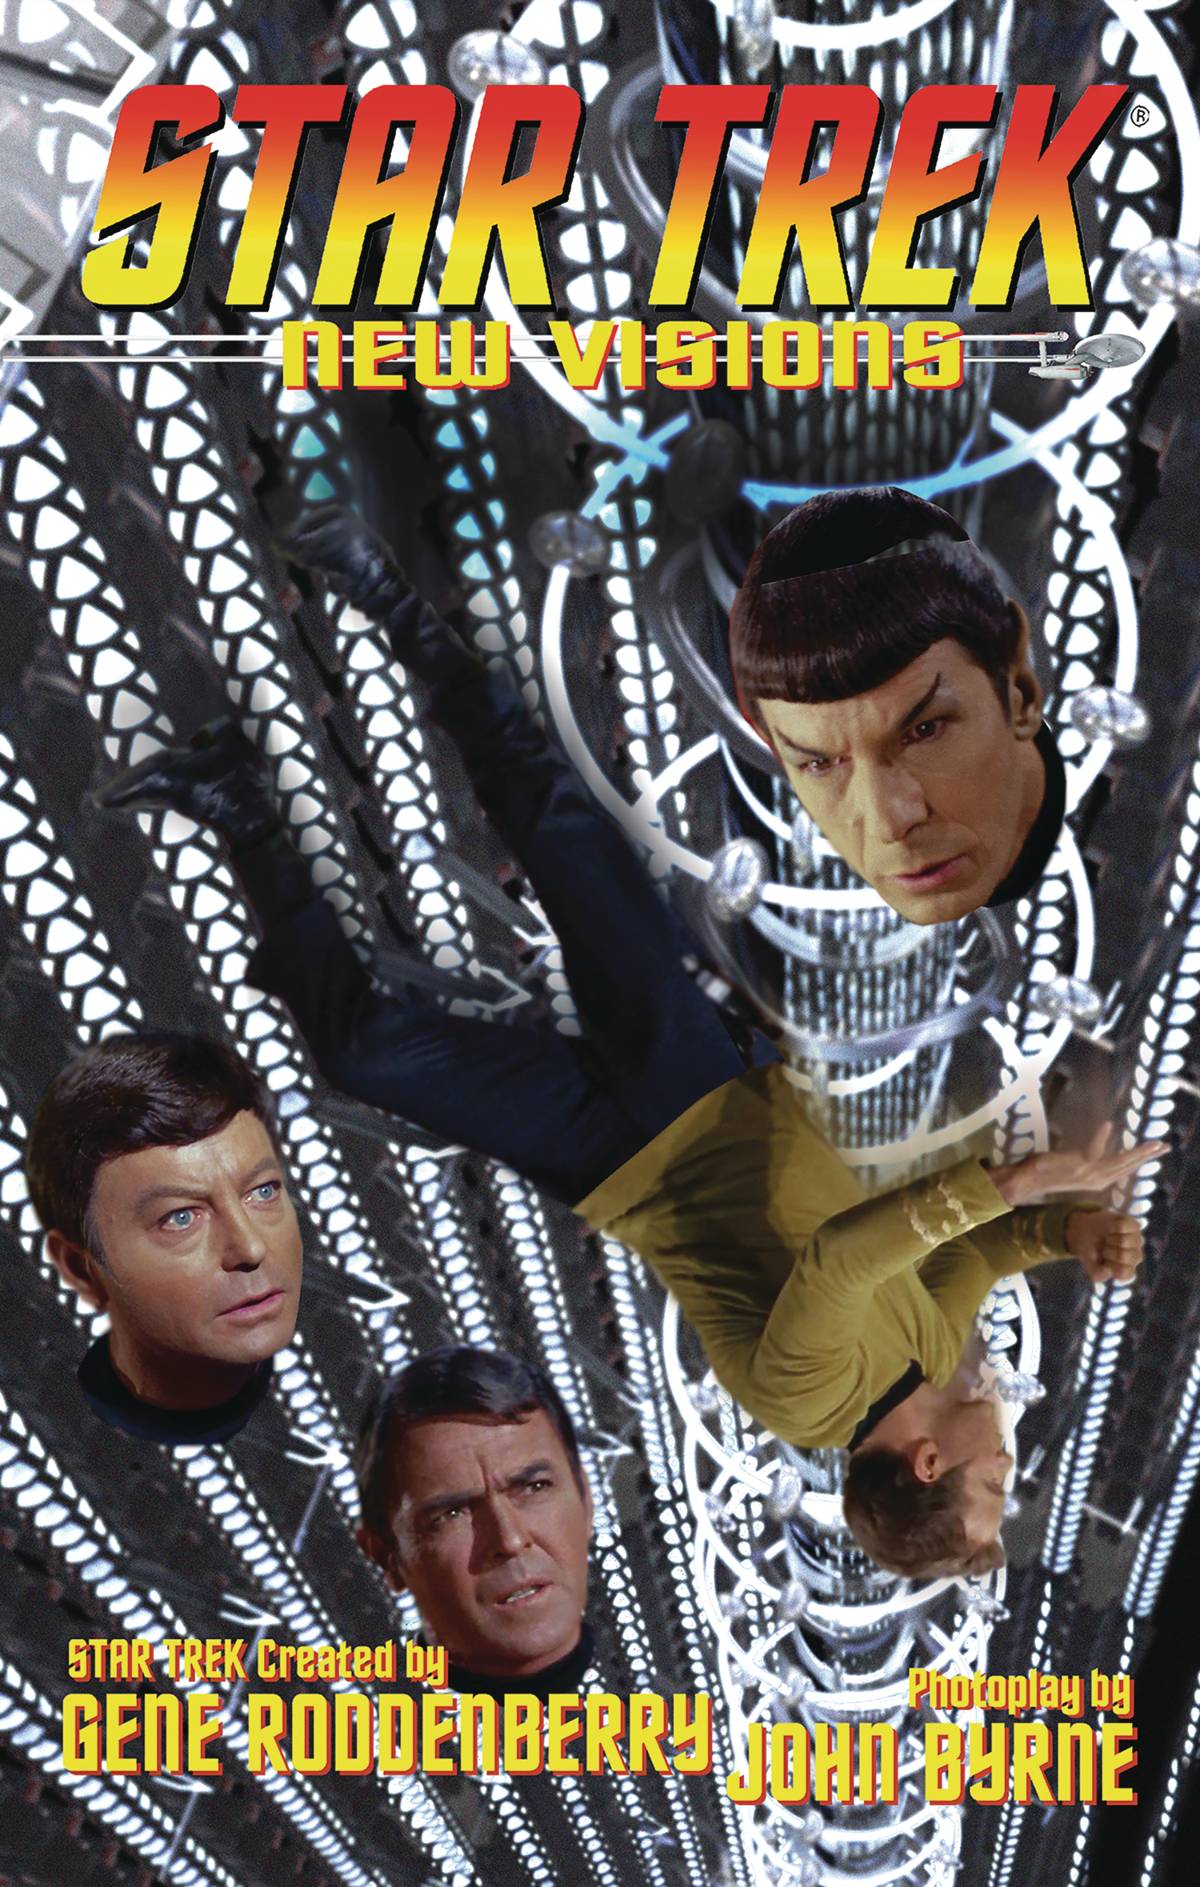 Star Trek New Visions Graphic Novel Volume 7